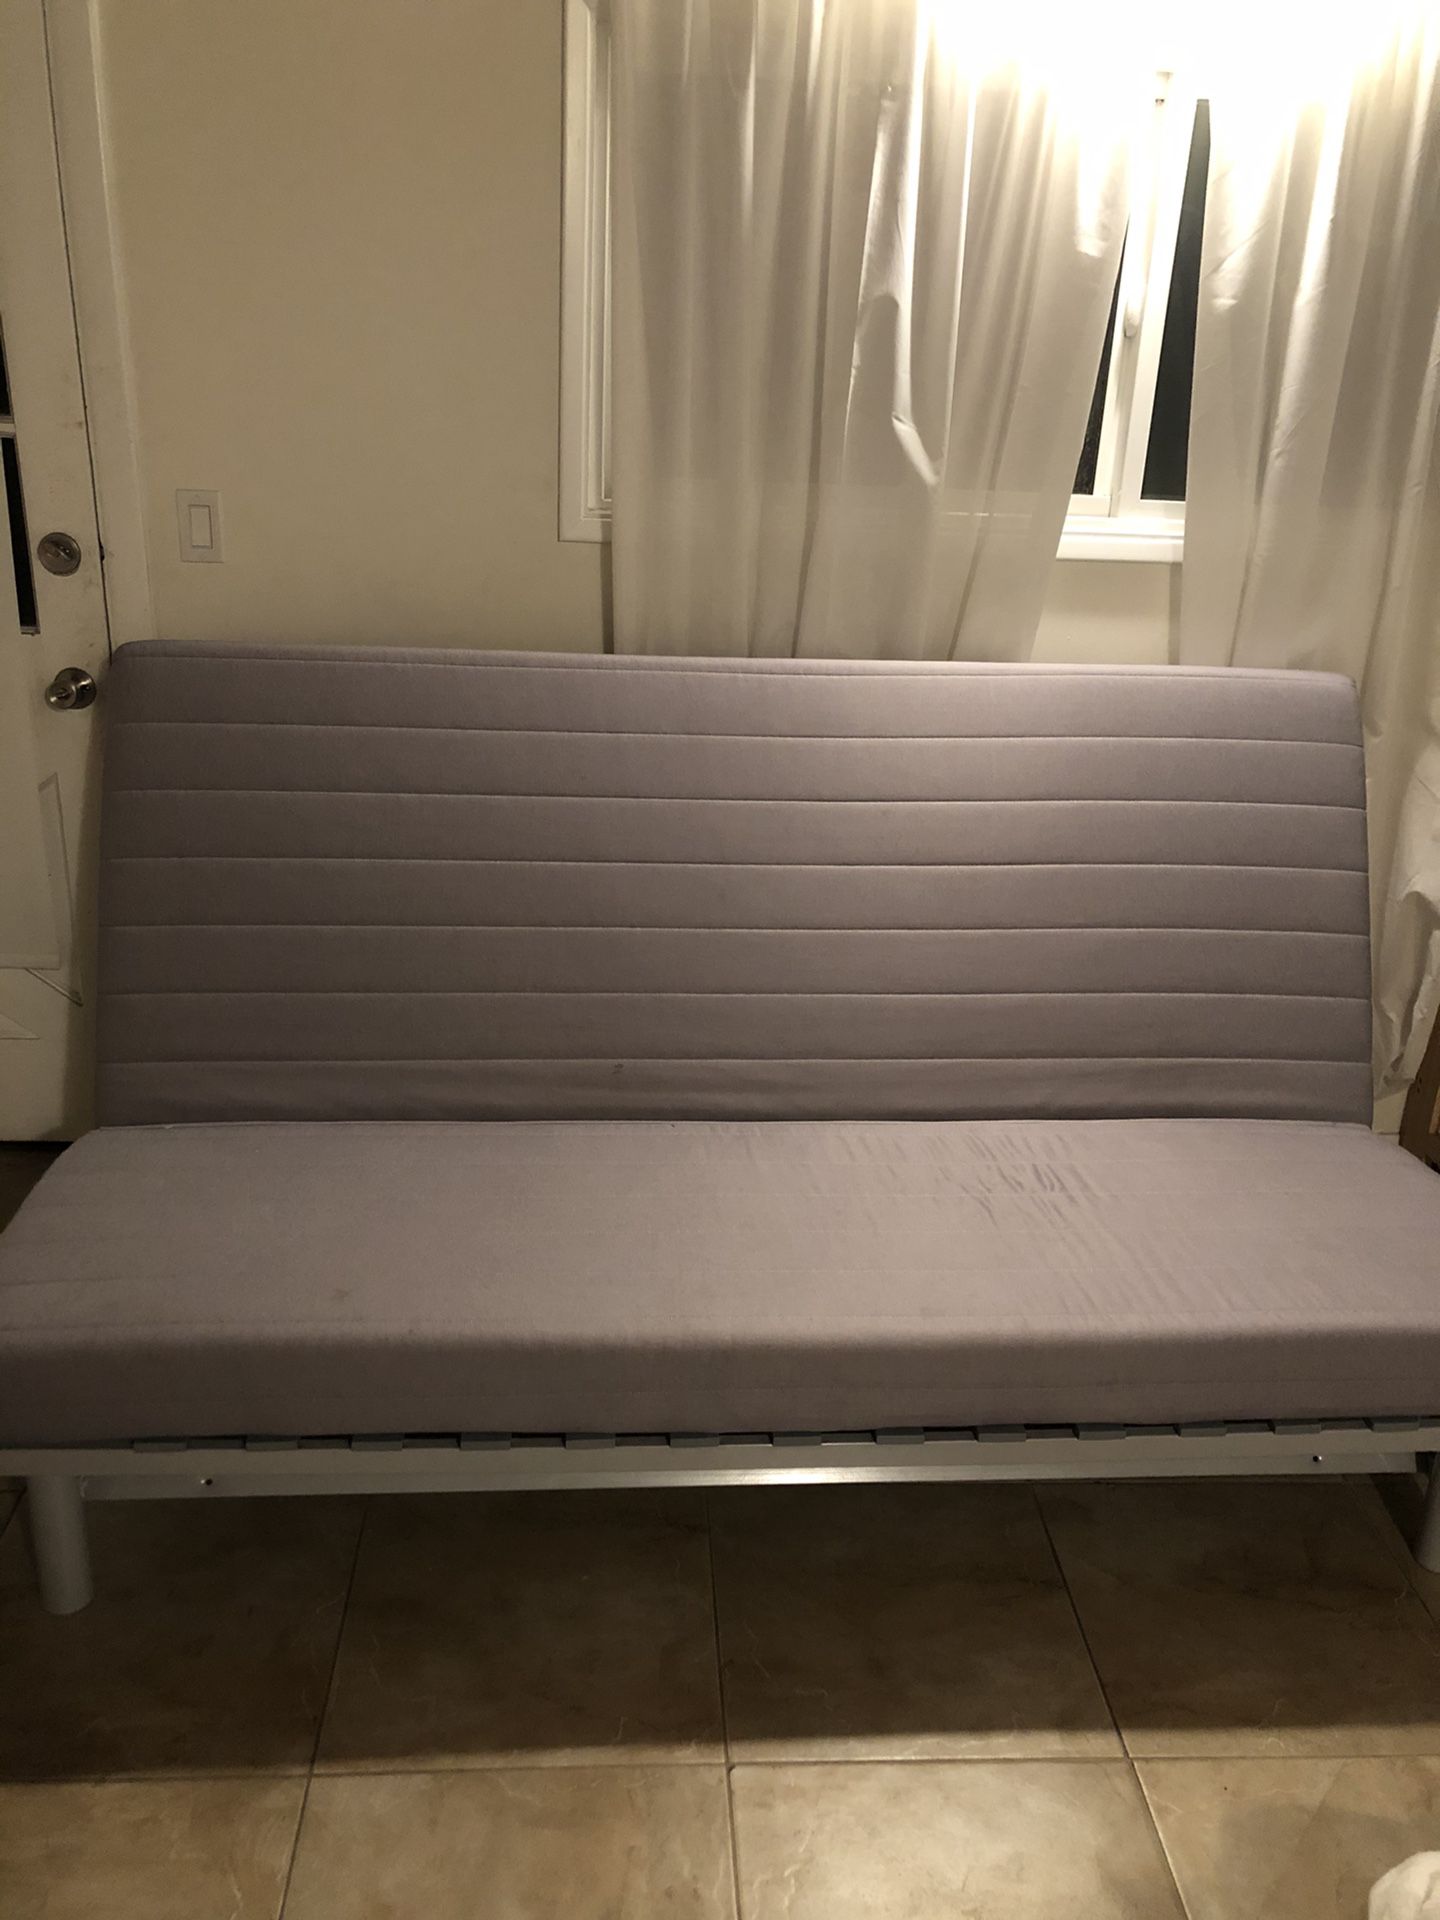 IKEA sleeper couch/futon